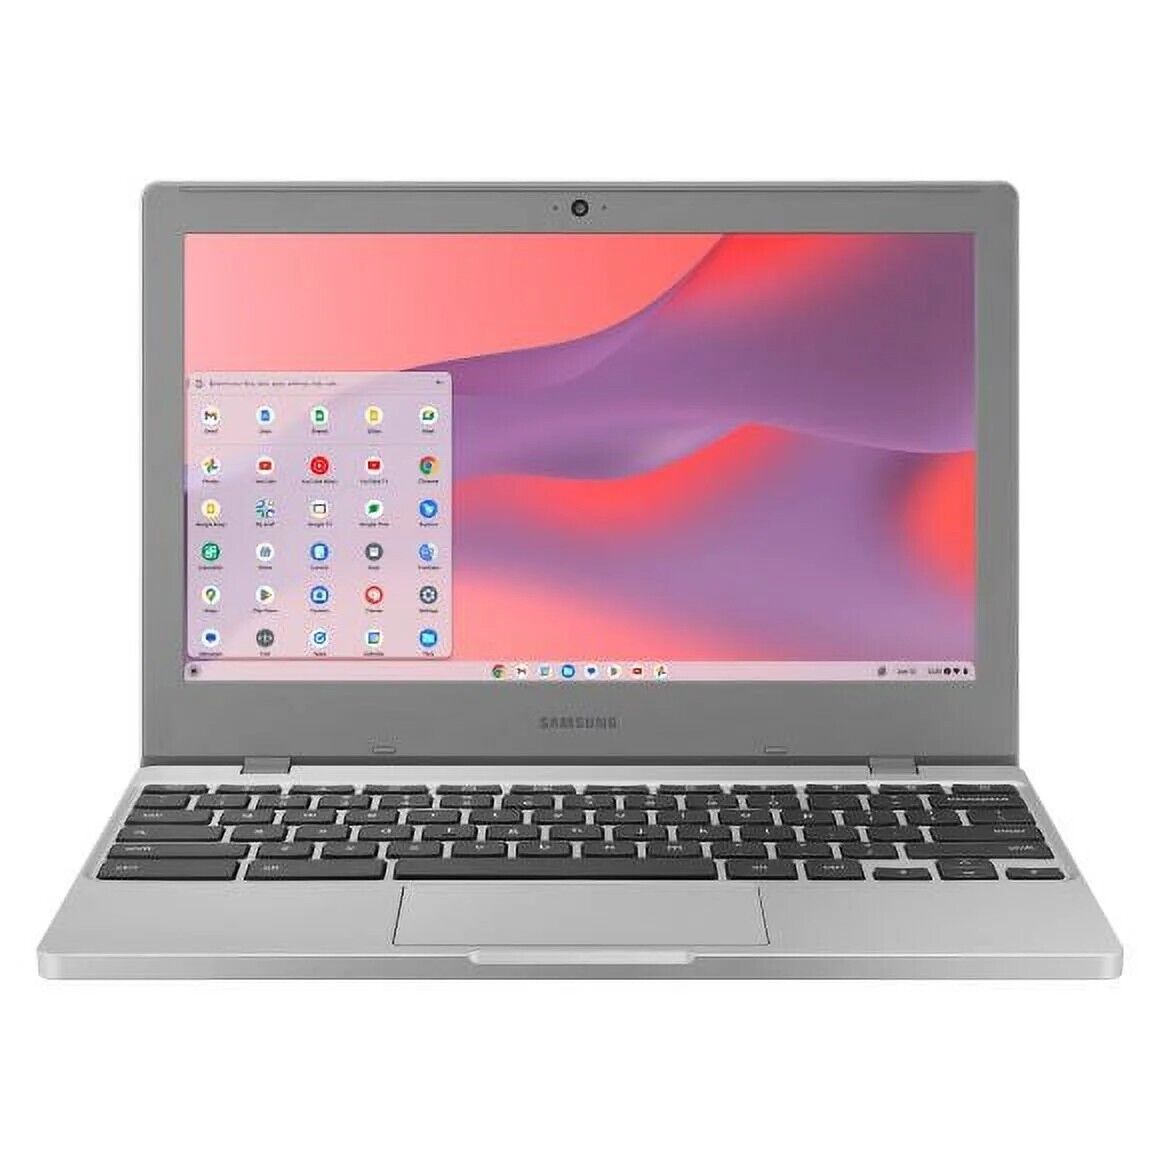 Samsung Chromebook 4 11.6” HD Intel Celeron N4020 64GB eMMC 4GB RAM Chrome OS